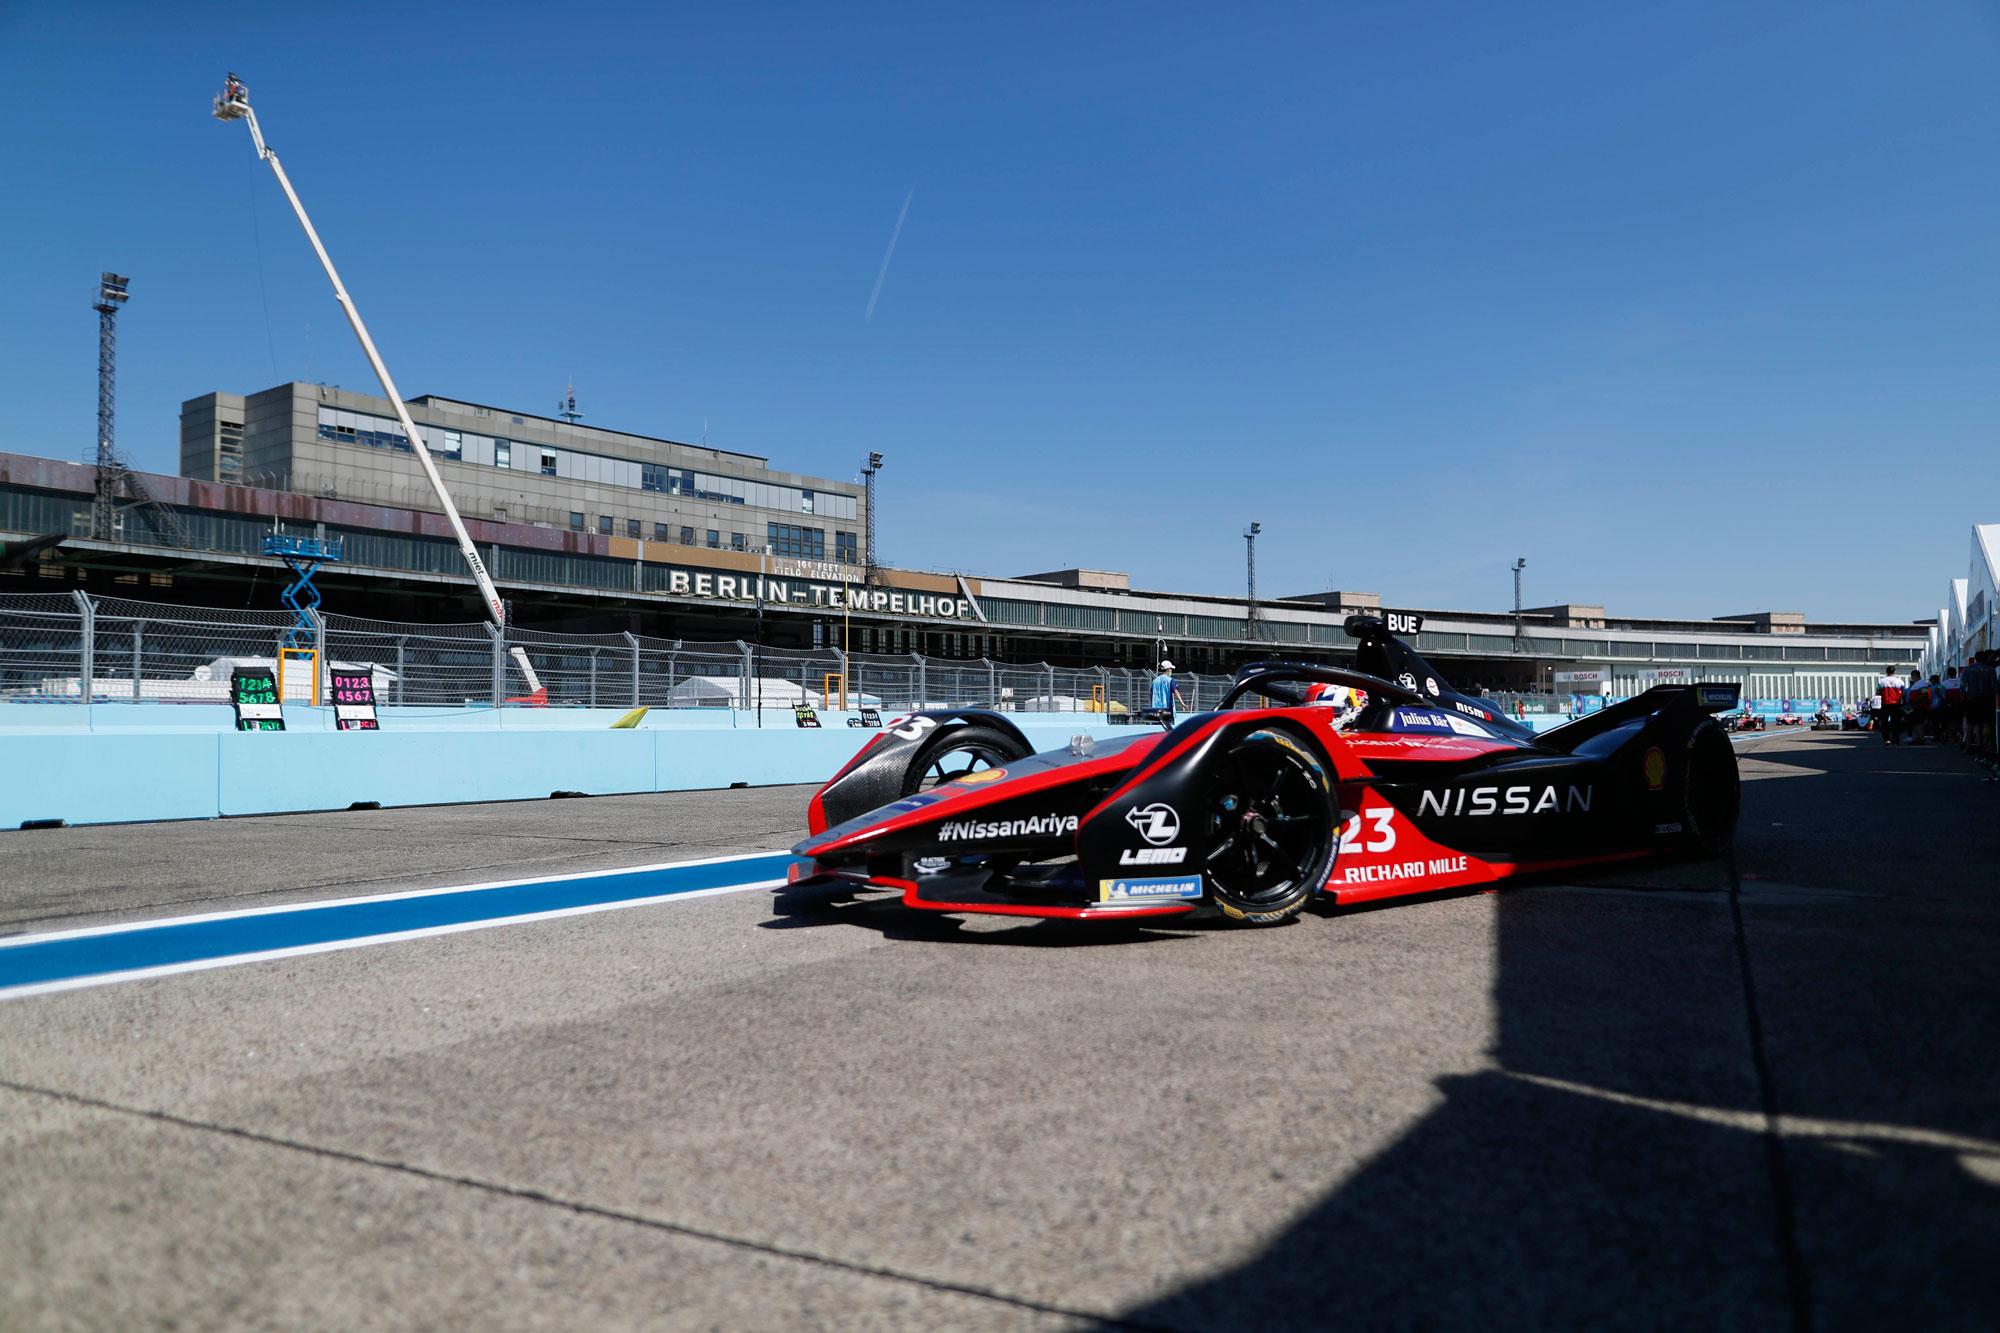 Η Nissan e.dams σημειώνει την πρώτη νίκη της στους τελικούς αγώνες της Formula E, στο Βερολίνο